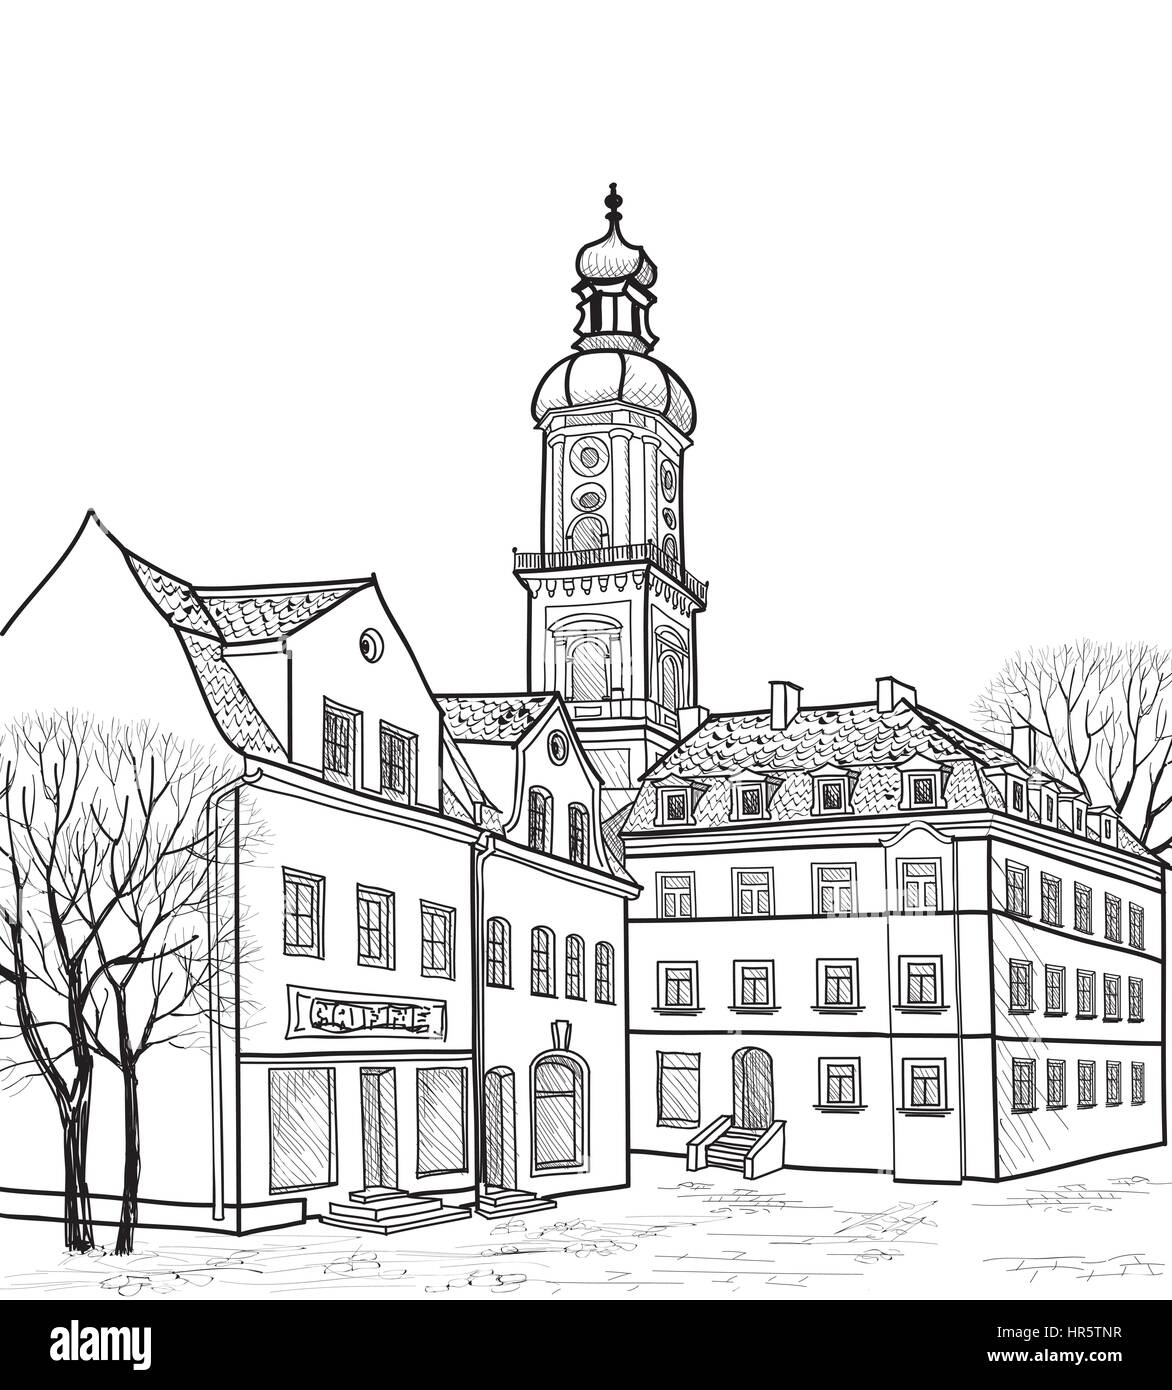 Street View in Altstadt. Stadtbild - Häuser, Gebäude und Baum auf Gasse. mittelalterlichen europäischen Landschaft. Stock Vektor